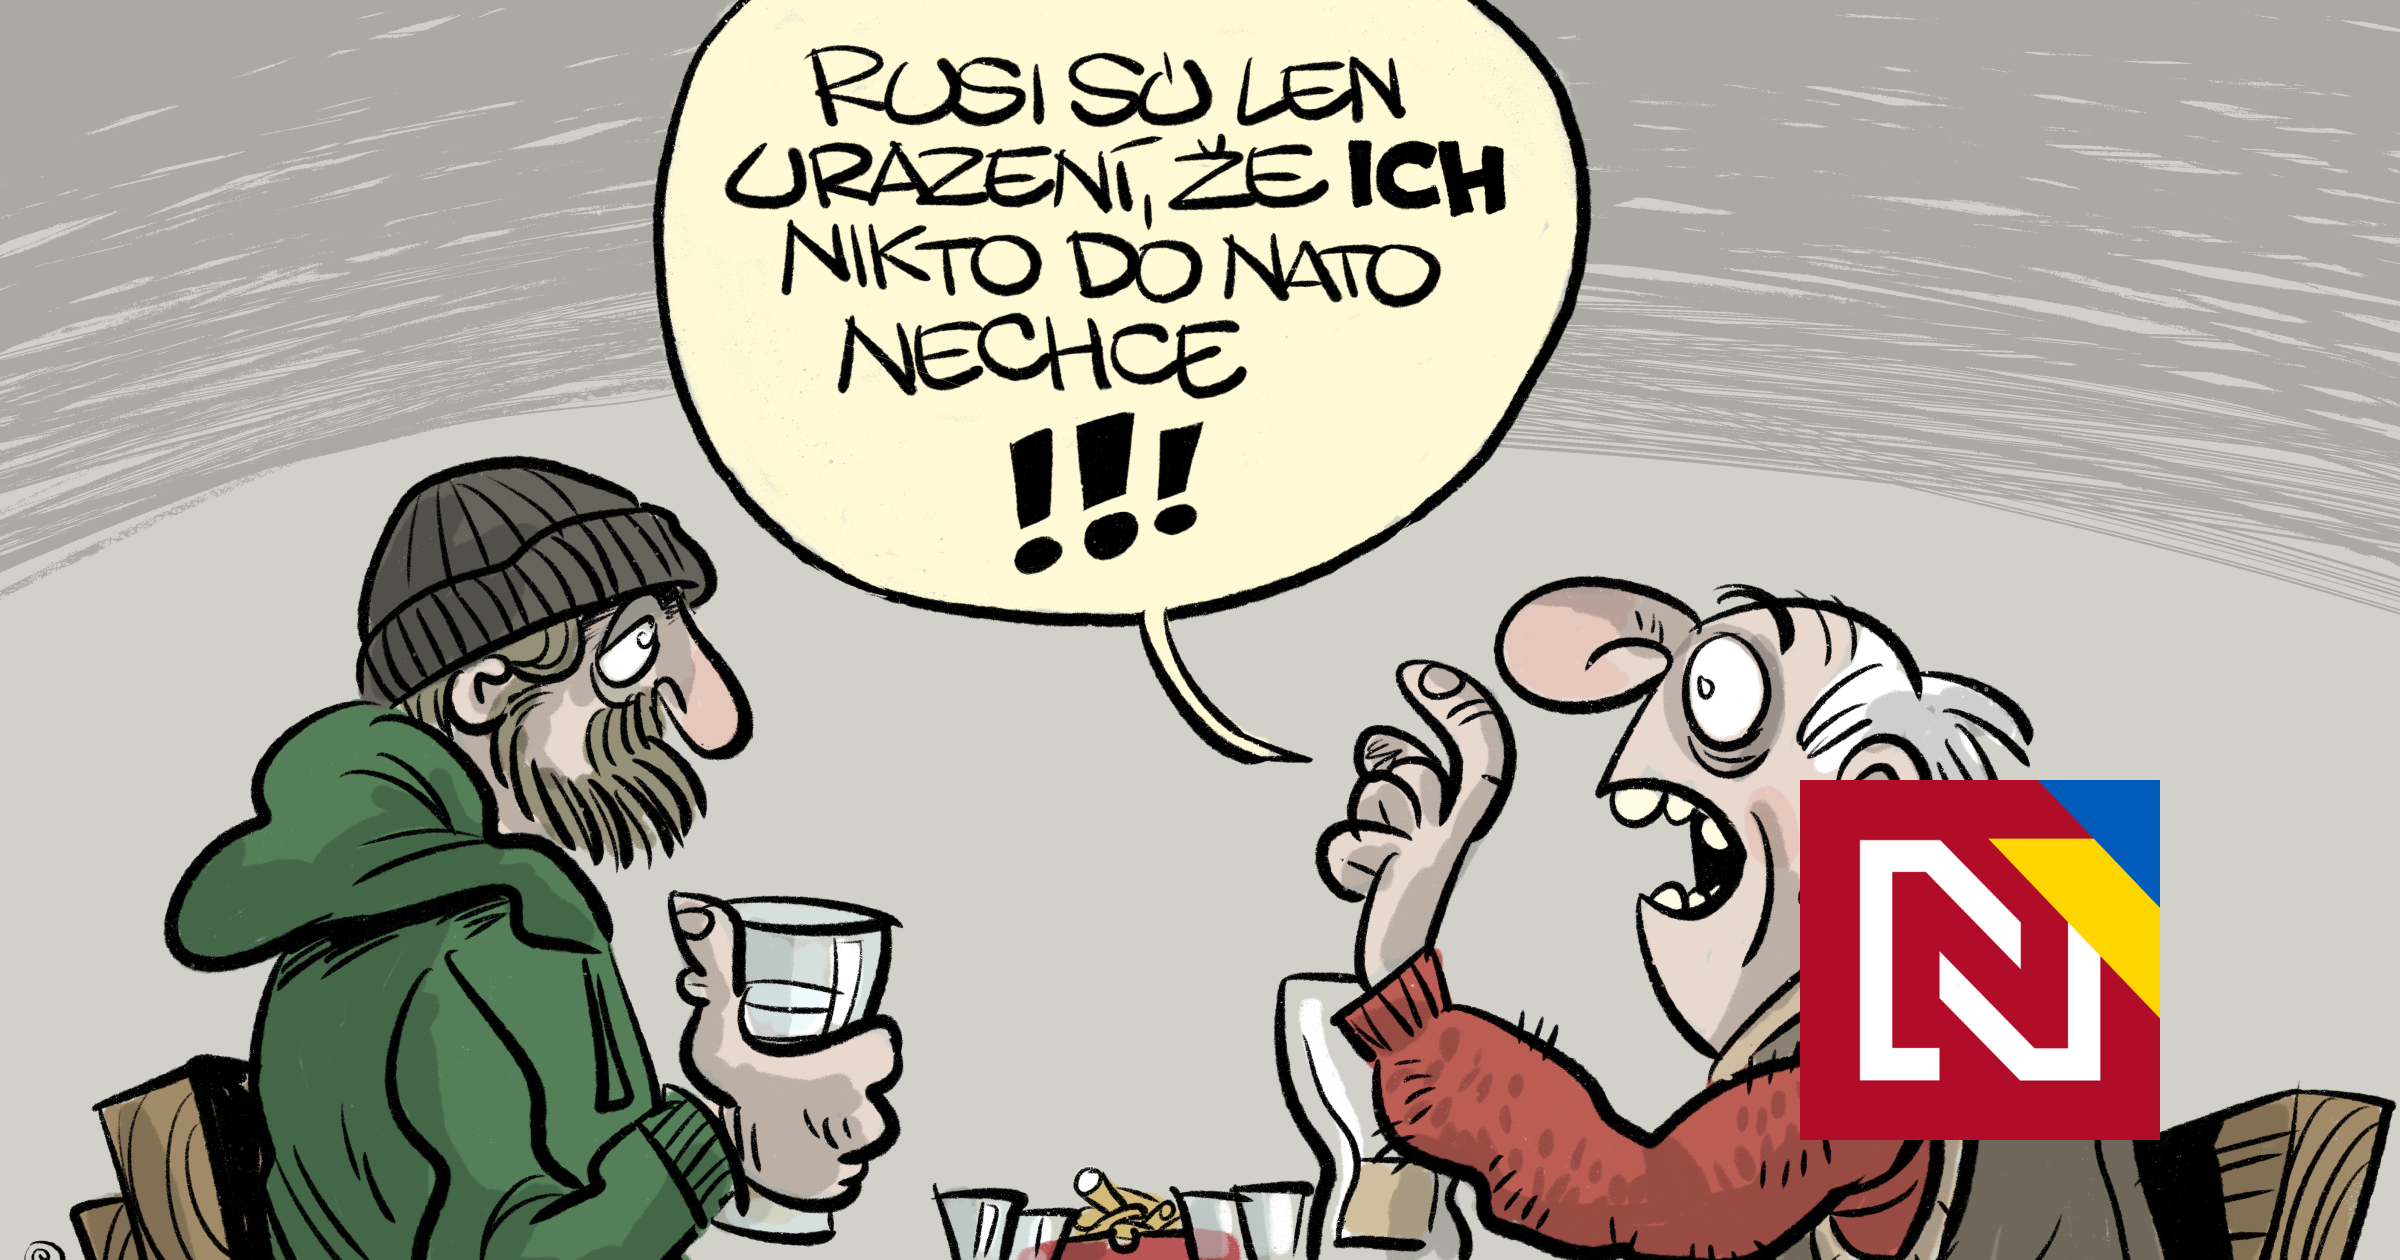 Il n’est pas vrai que l’Occident ait promis de ne pas étendre l’OTAN vers l’est